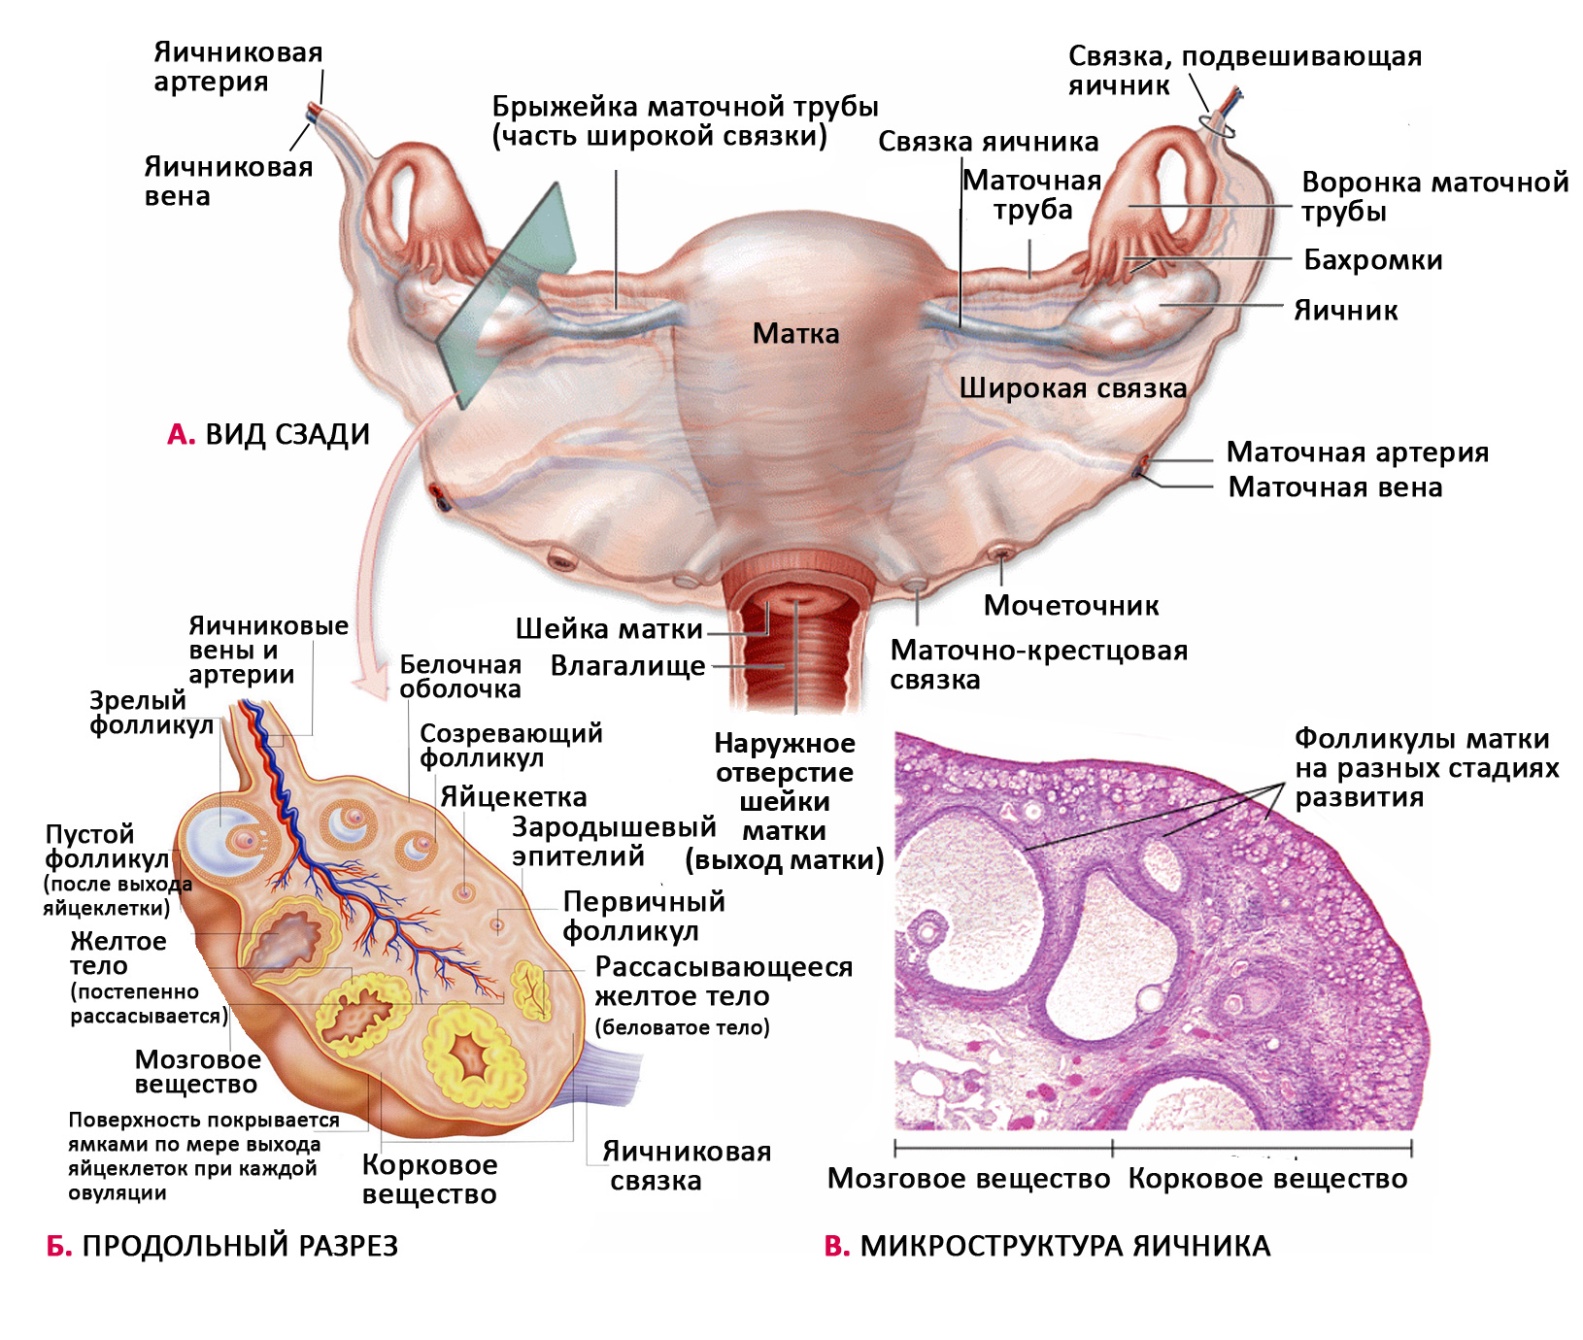 Женские половые органы яичник. Матка придатки яичники анатомия. Женская половая система яичники. Придаток яичника и околояичник. Яичник анатомия строение внешнее.